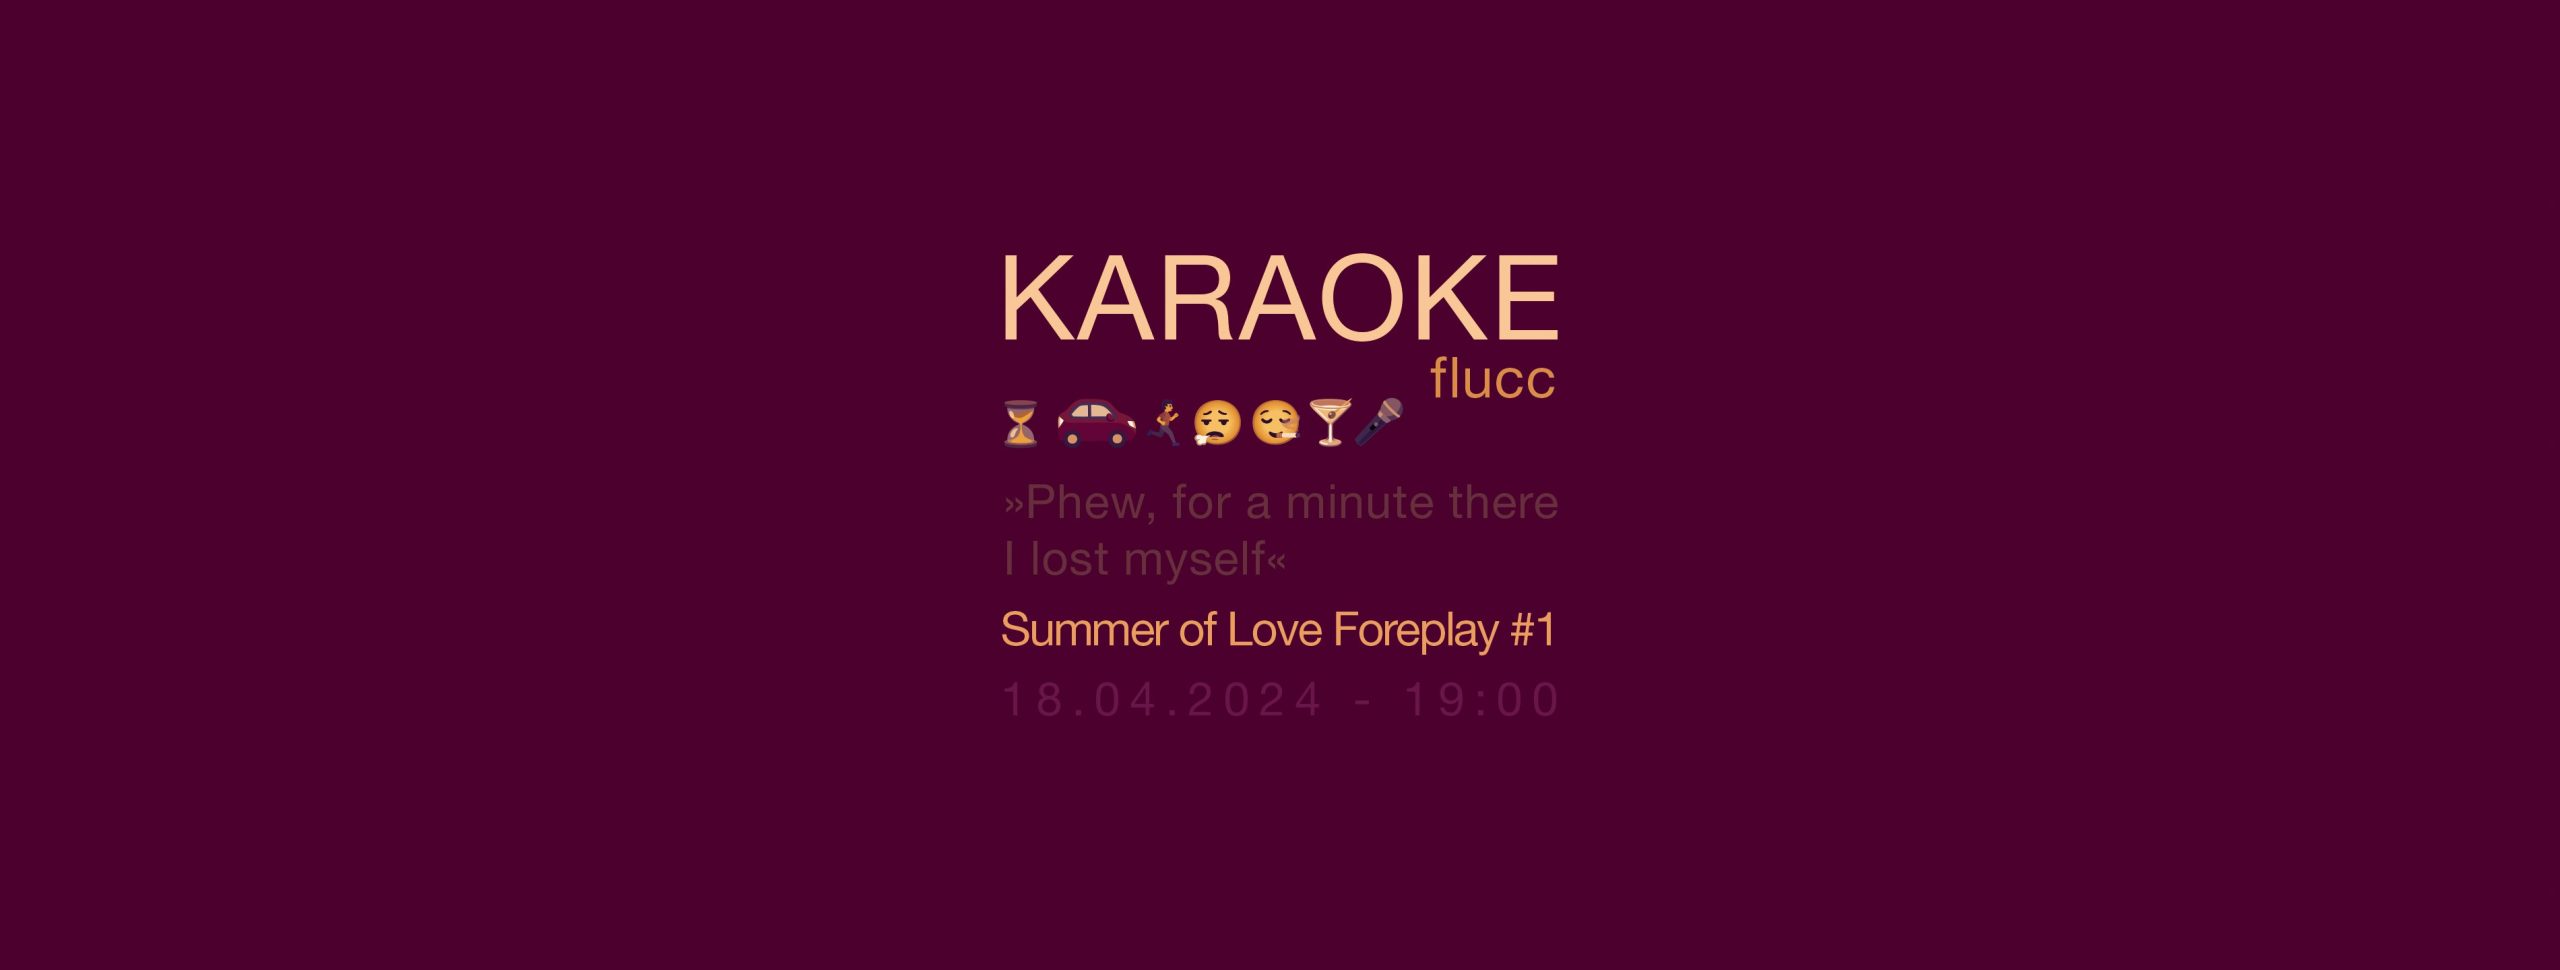 Karaoke FLUCC am 18. April 2024 @ Flucc.